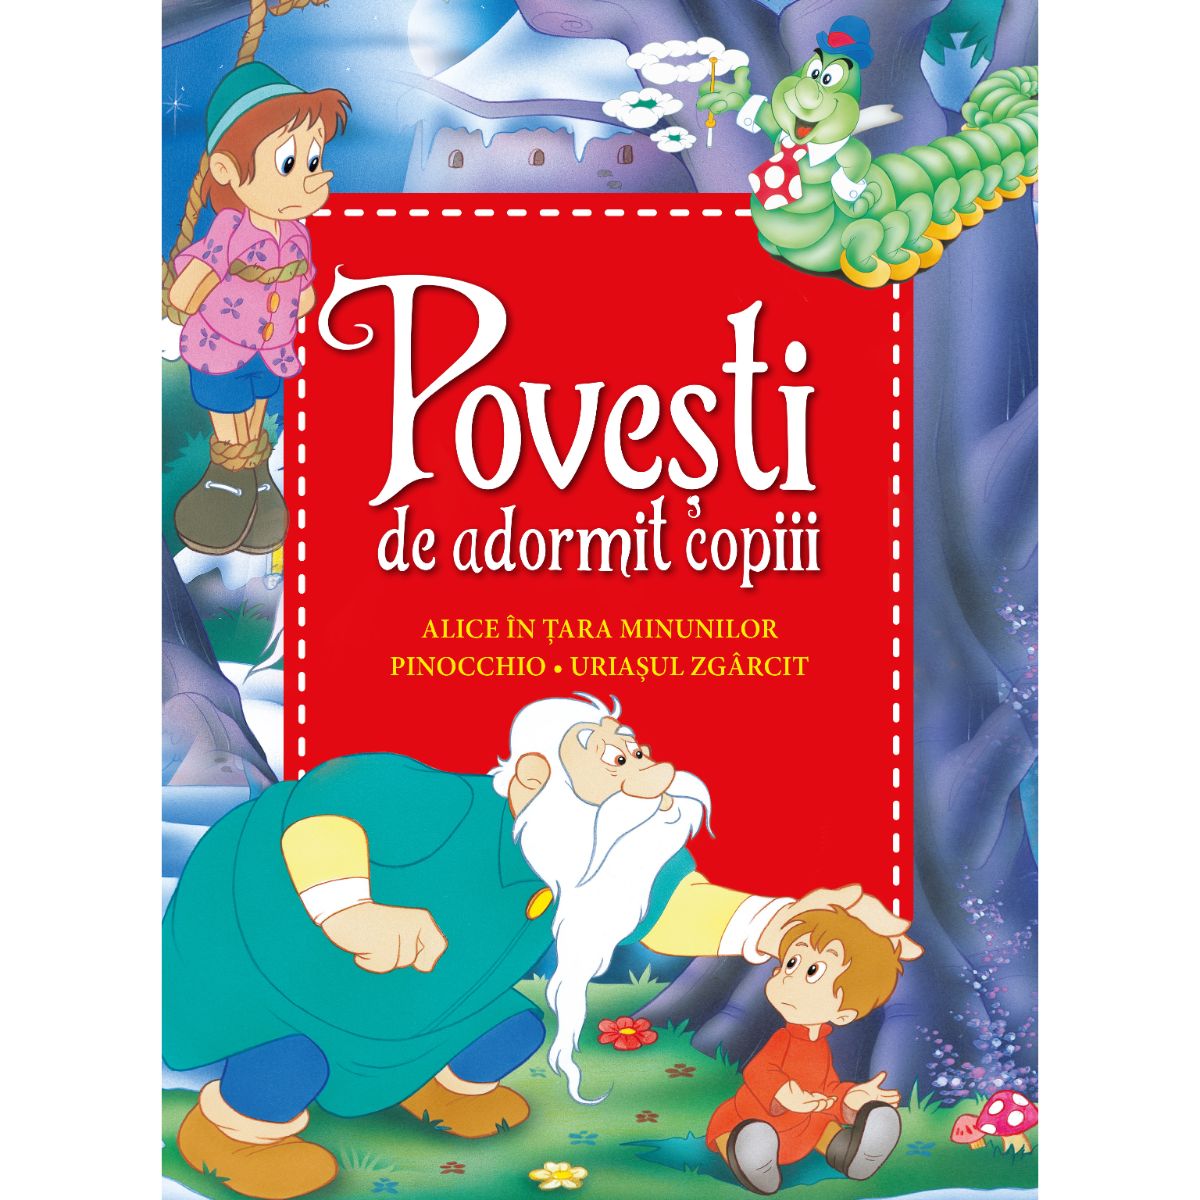 Alice in tara minunilor, Pinocchio, Uriasul zgarcit. Povesti de adormit copiii -Poveşti imagine 2022 protejamcopilaria.ro